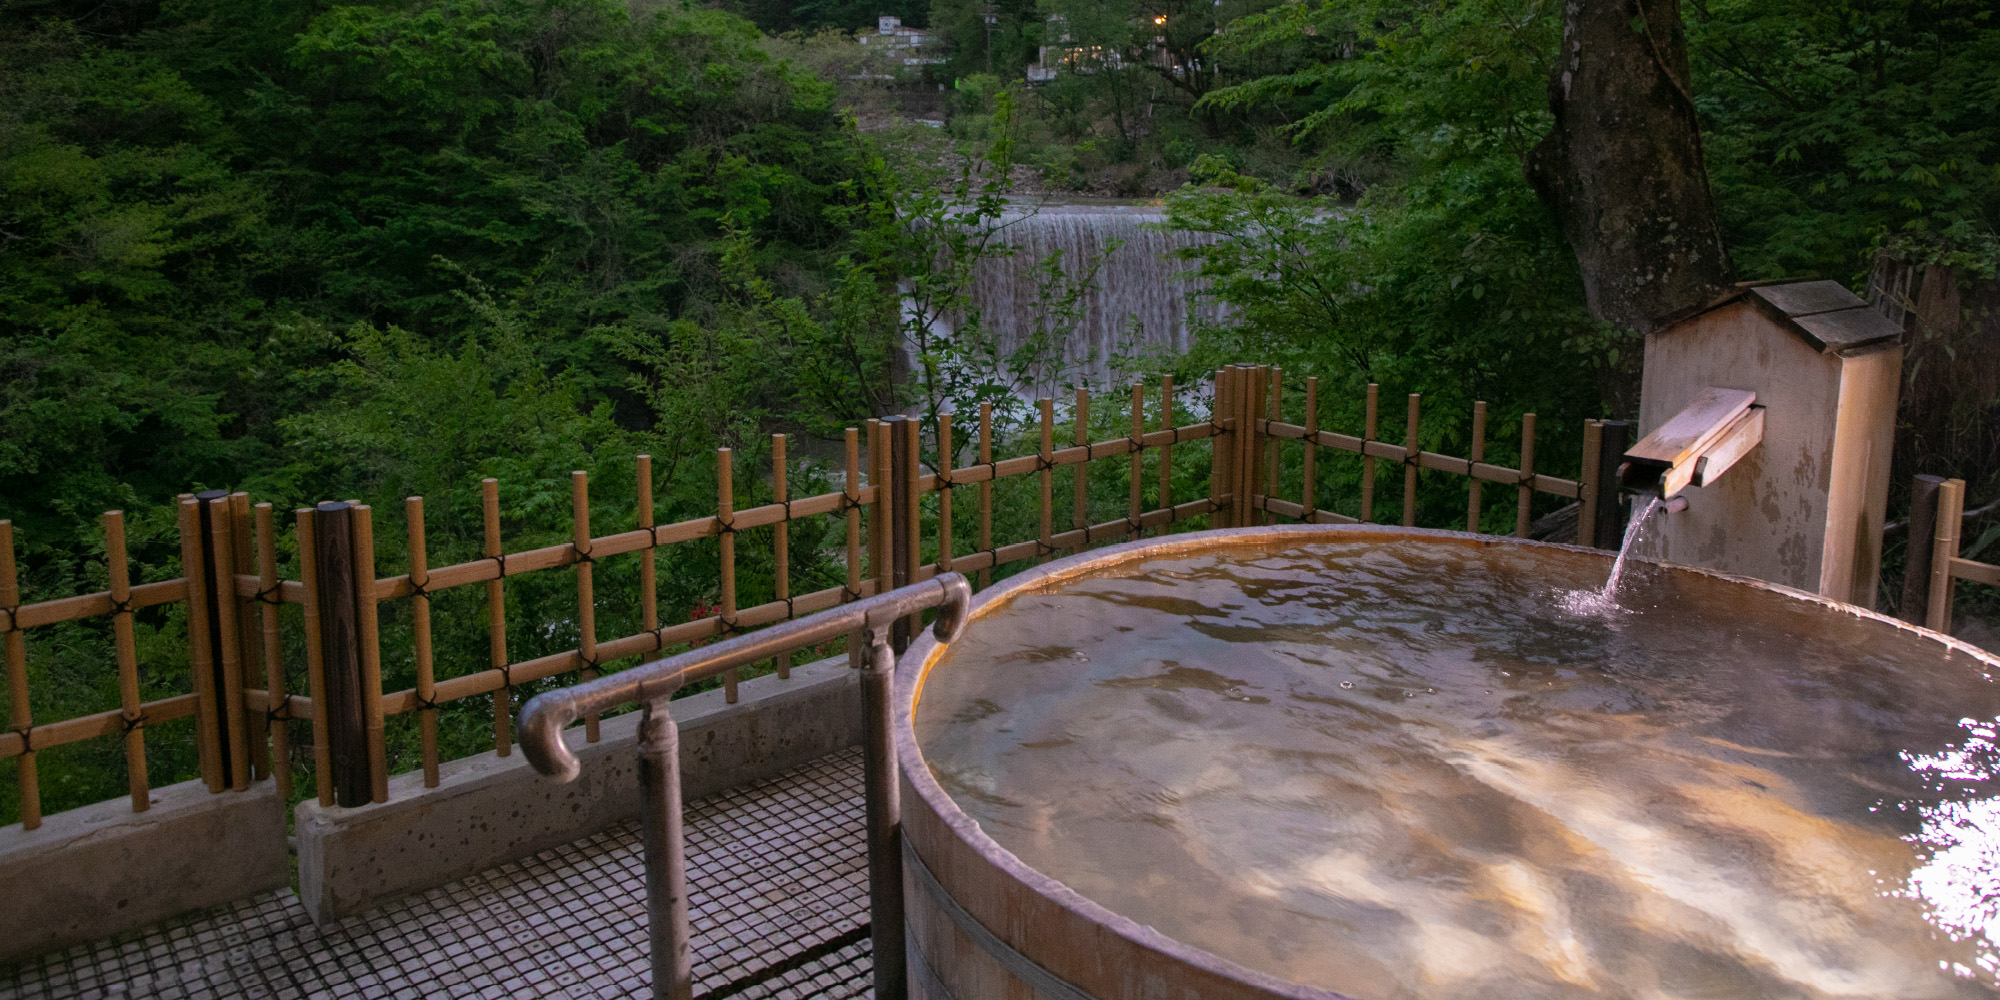 土湯温泉 ホテル山水荘 公式 源泉かけ流し露天風呂の宿